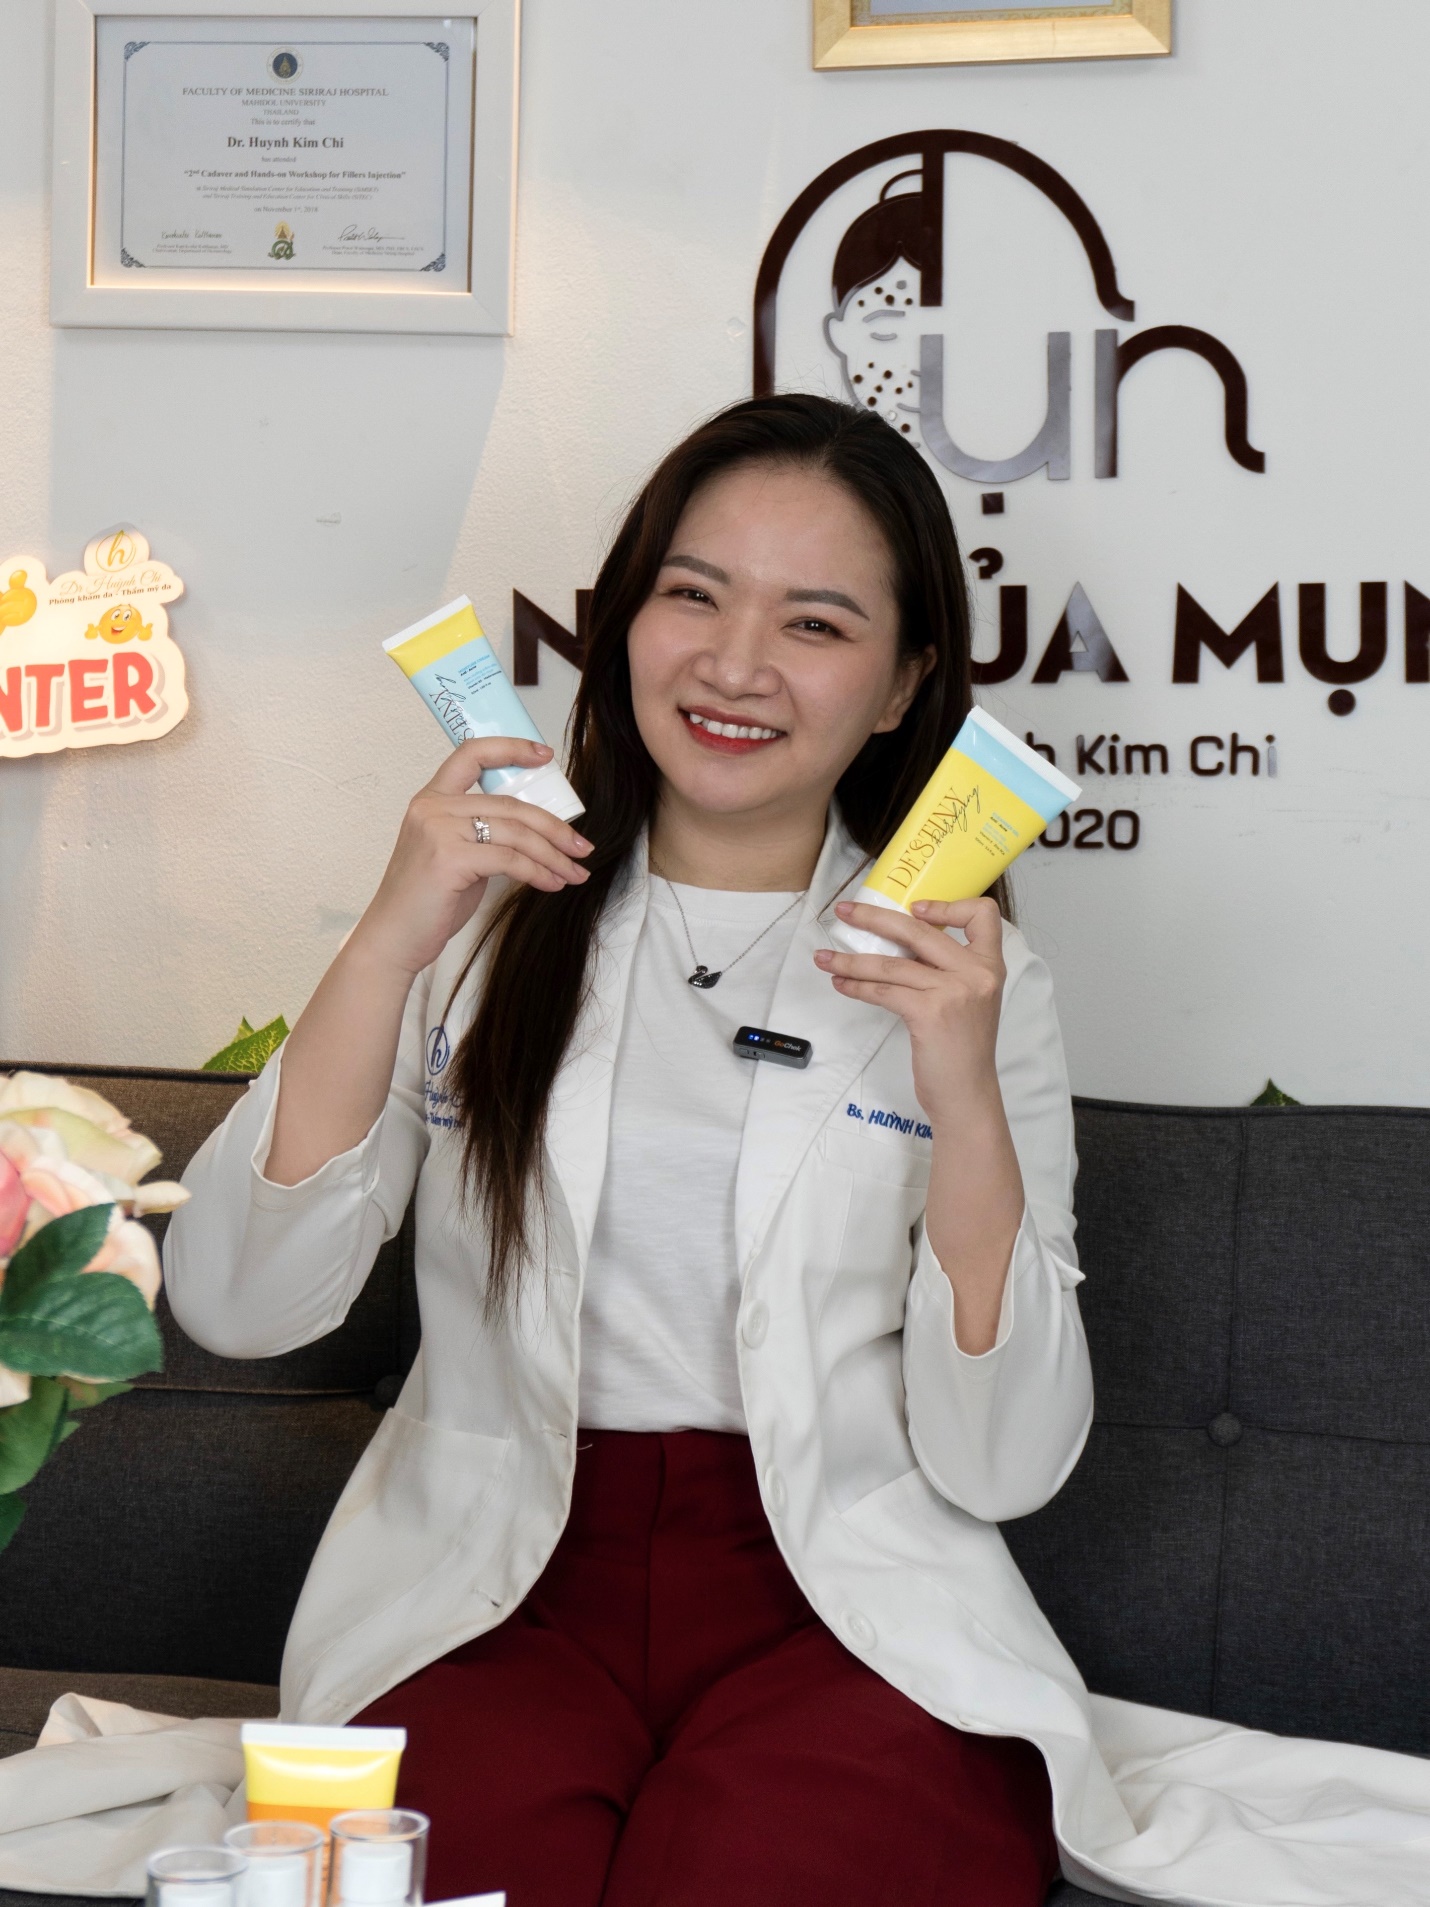 Nữ CEO xây dựng thương hiệu DESTINY Purifying: “Tất cả vì làn da Việt” - 1